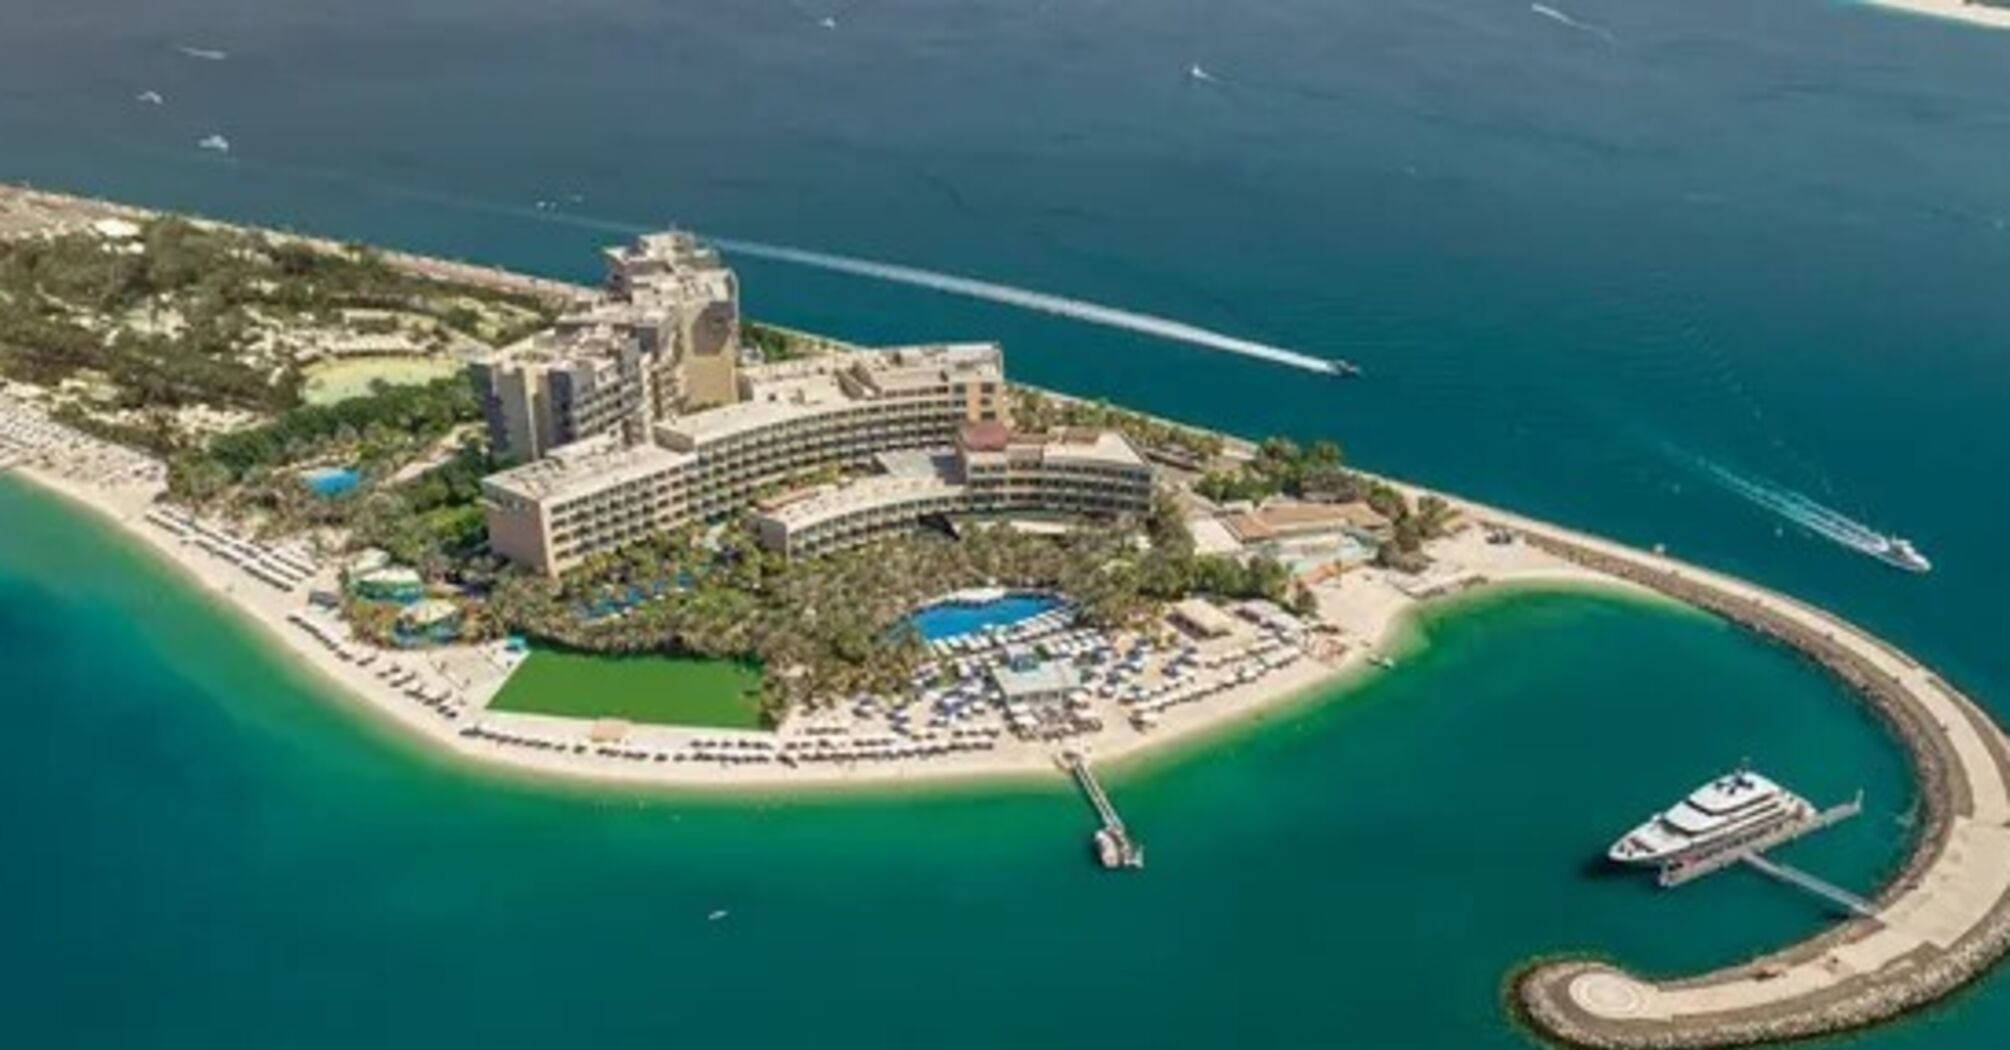 Лучший пляж: отель Rixos в Дубаях получил сертификат Голубого флага